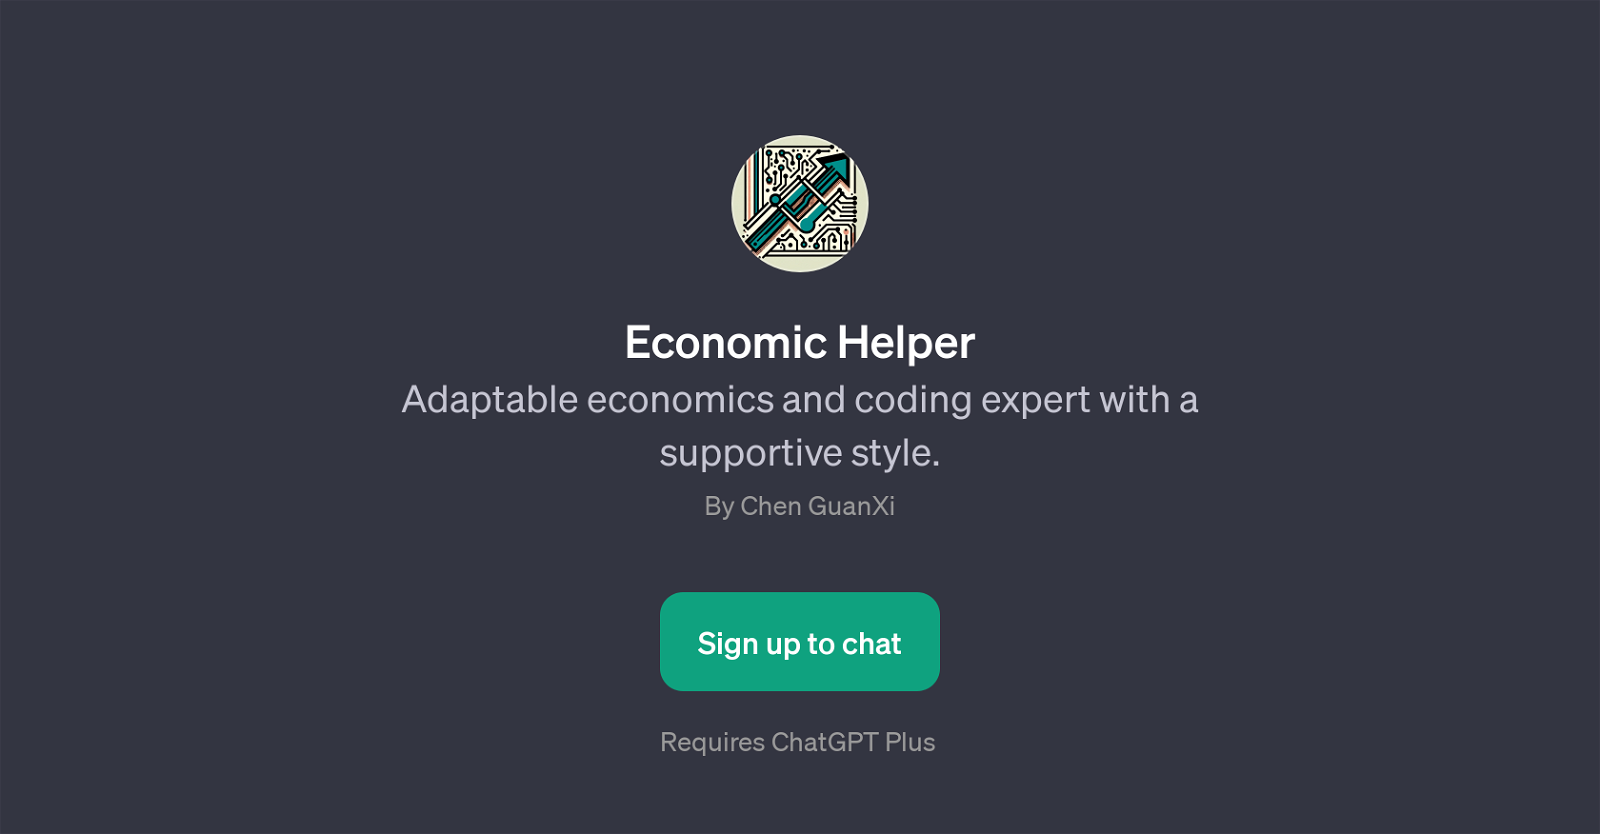 Economic Helper website